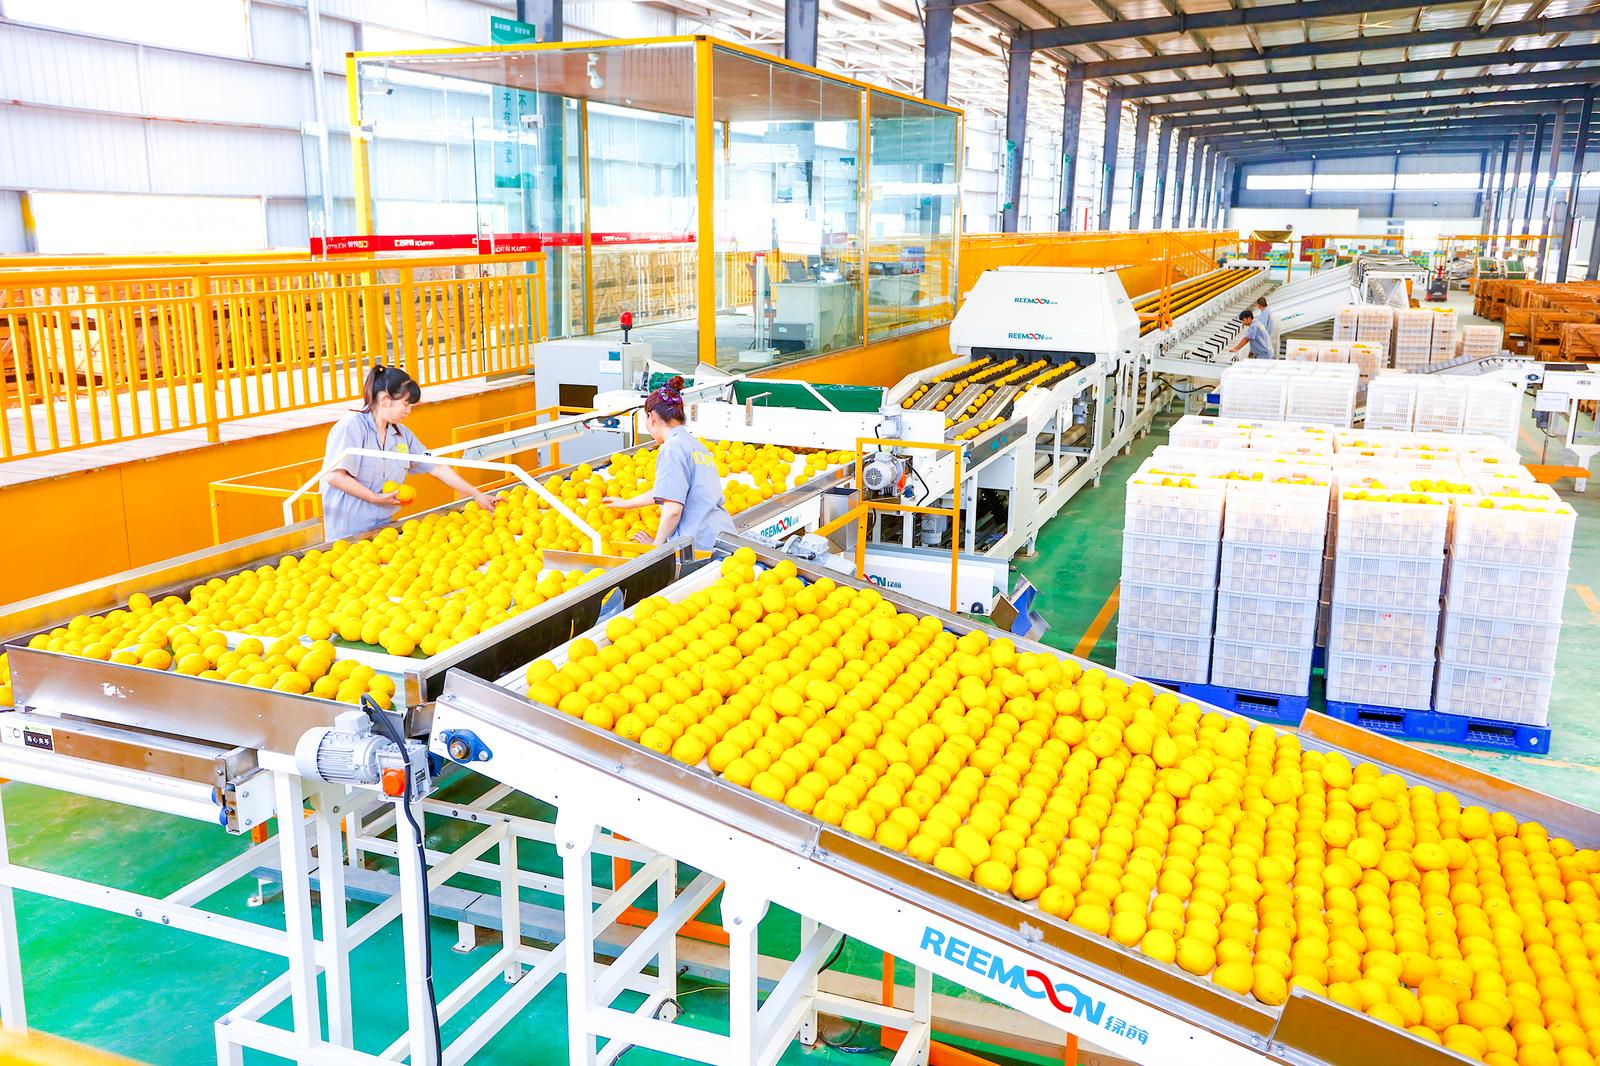 重庆汇达柠檬有限公司生产车间。图潼南区融媒体中心.jpg